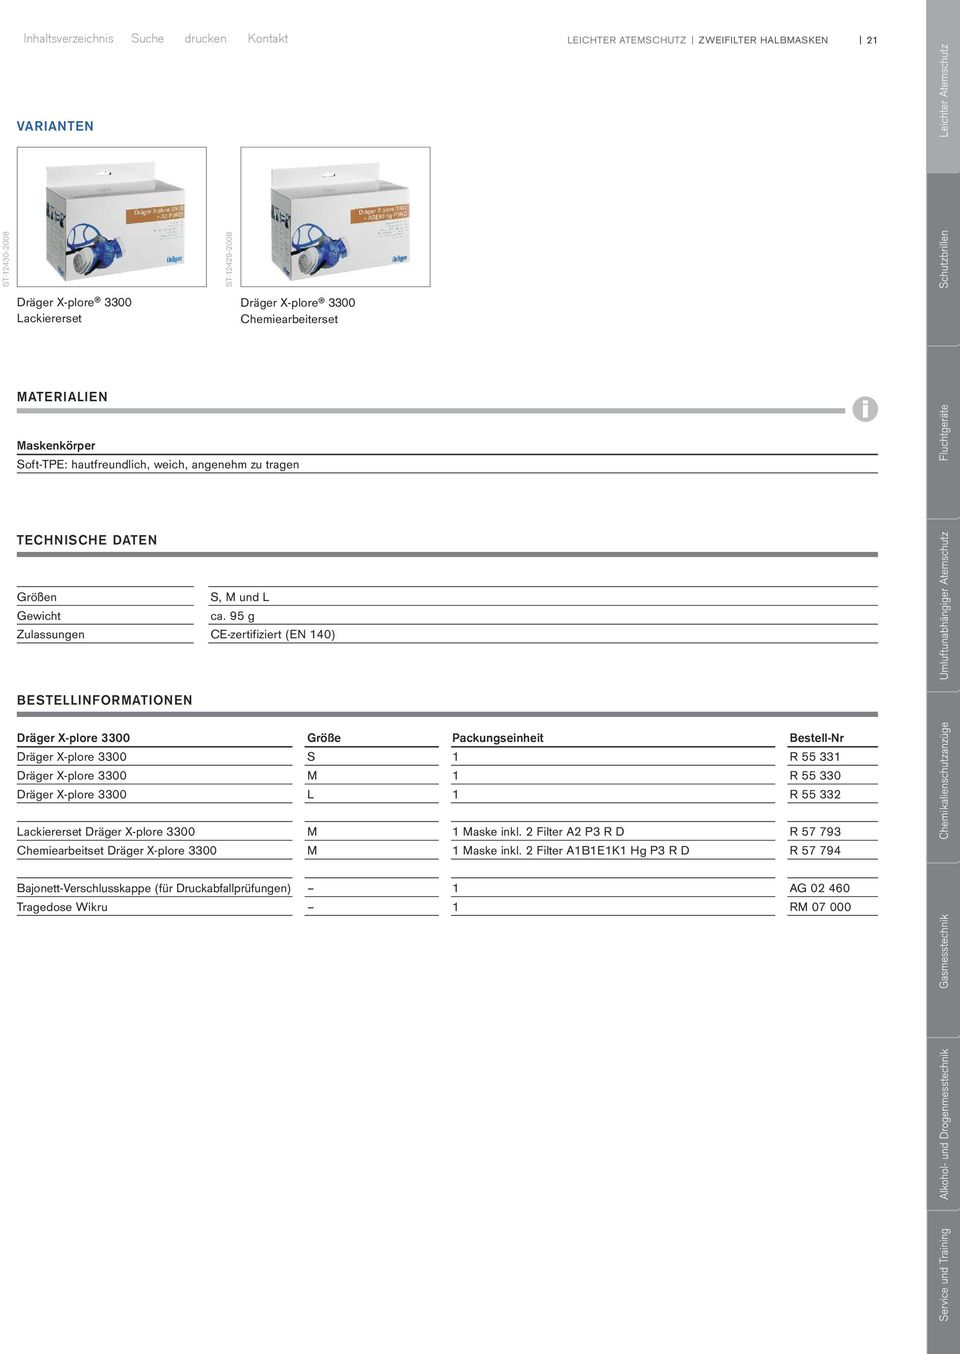 95 g Zulassungen CE-zertifiziert (EN 140) BESTELLINFORMATIONEN Dräger X-plore 3300 Größe Packungseinheit Bestell-Nr Dräger X-plore 3300 S 1 R 55 331 Dräger X-plore 3300 M 1 R 55 330